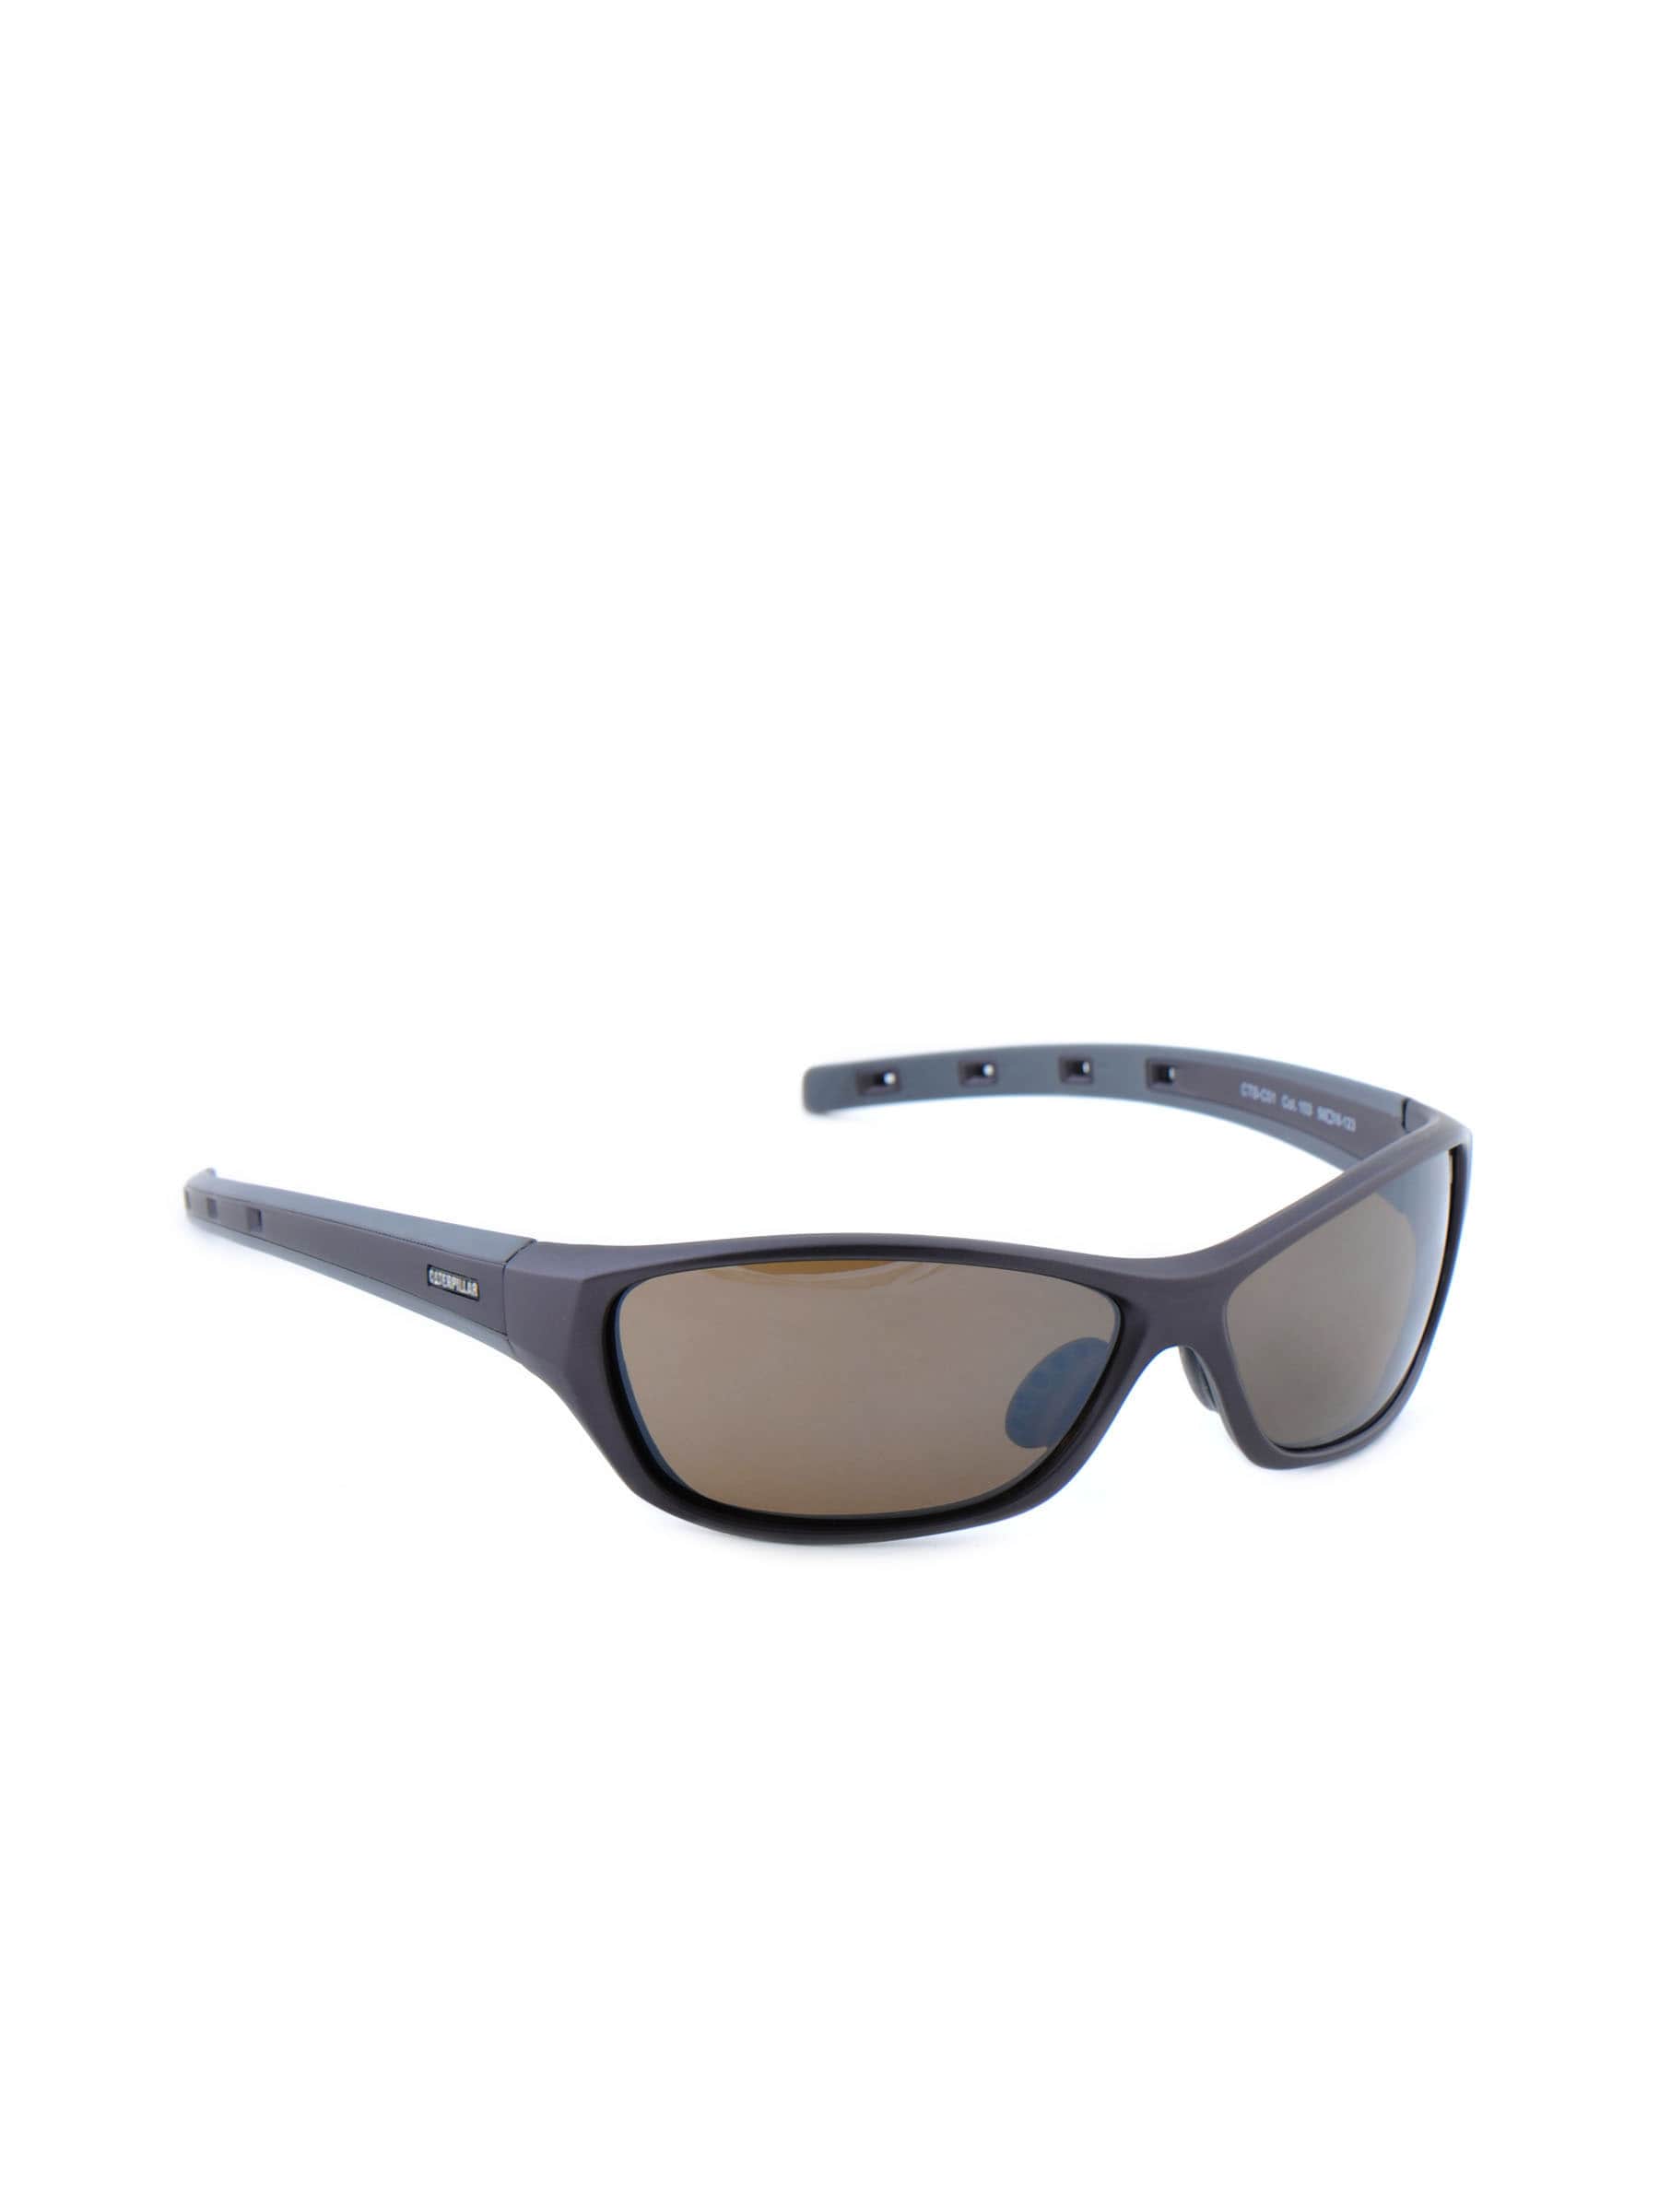 Cat Unisex Classic Grey Sunglasses